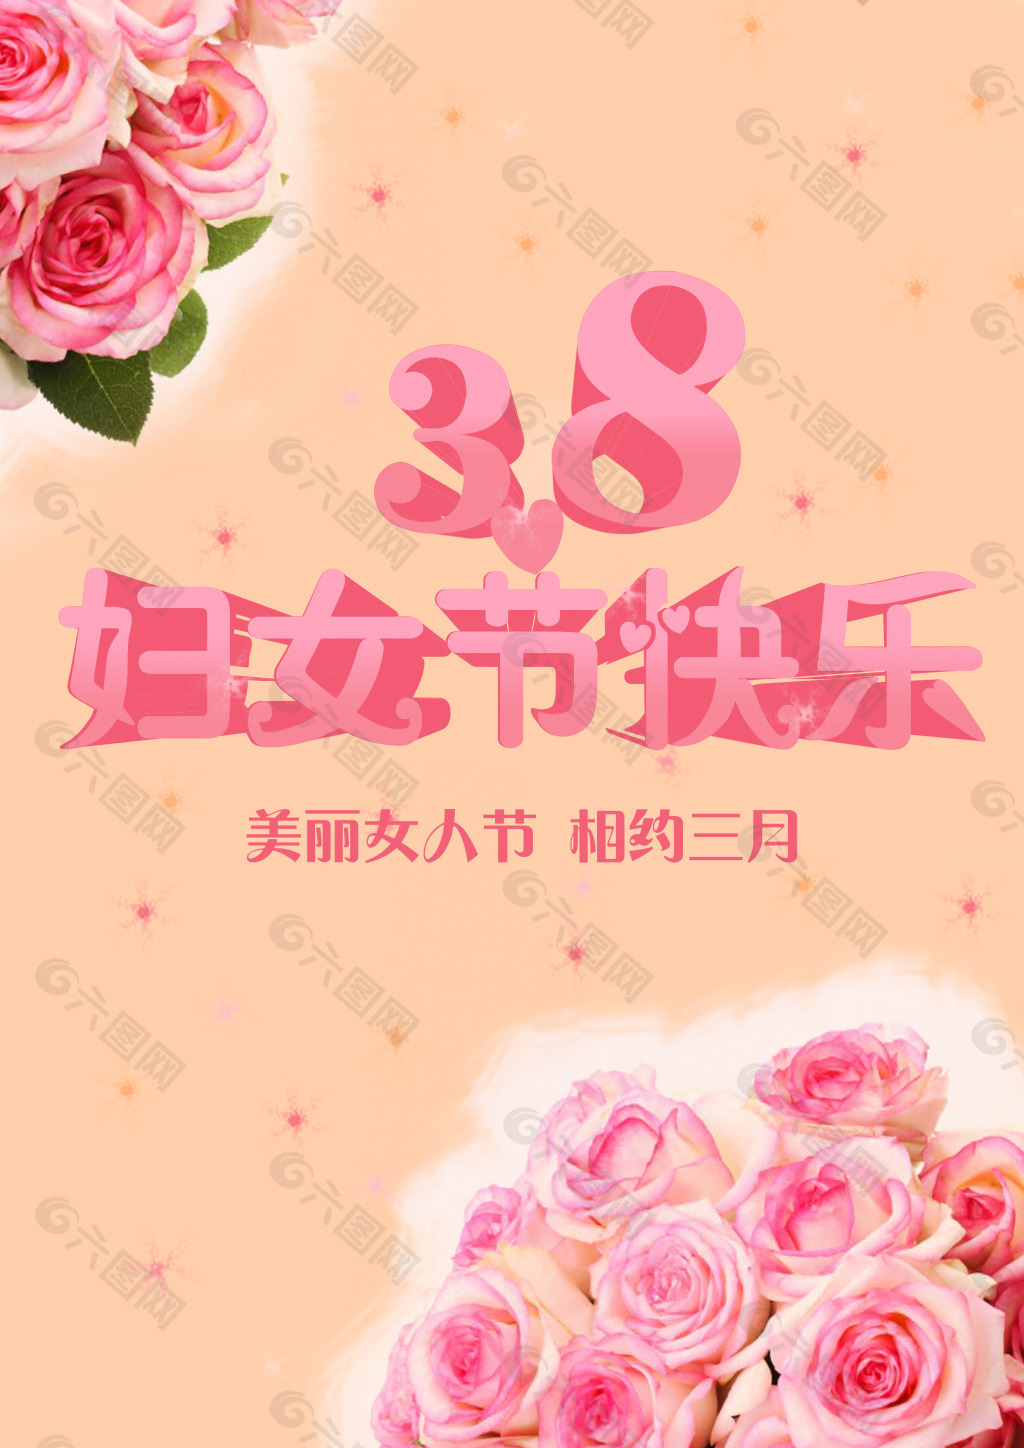 3.8妇女节 节日 素材 商业海报